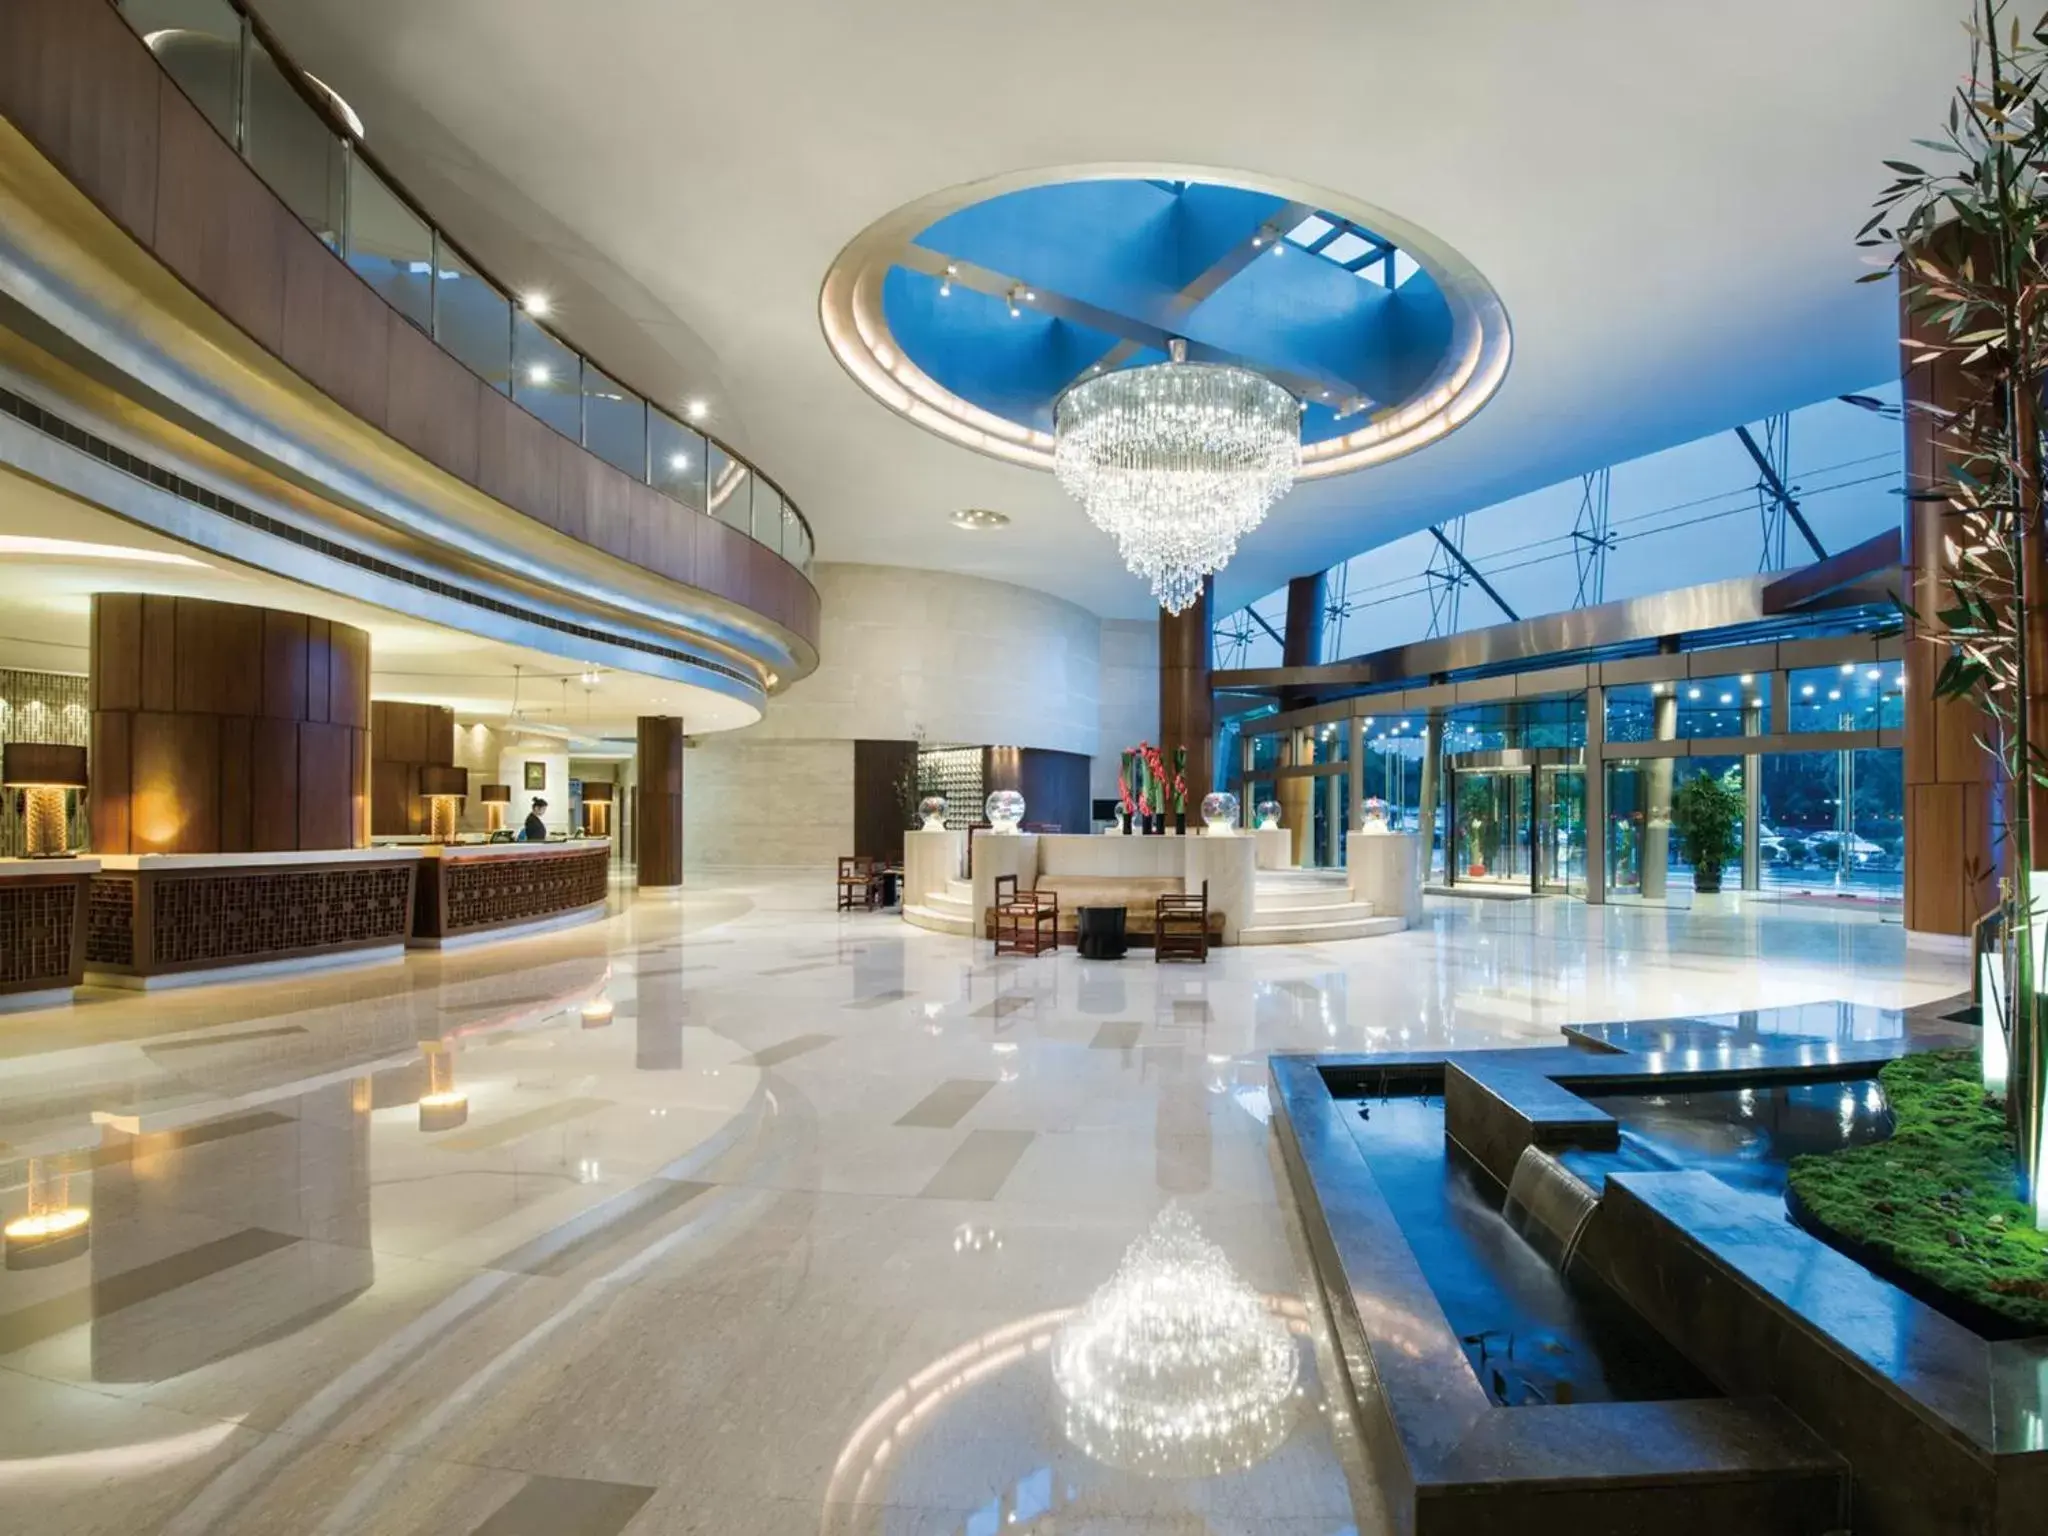 Lobby or reception in Grand Millennium Shanghai HongQiao